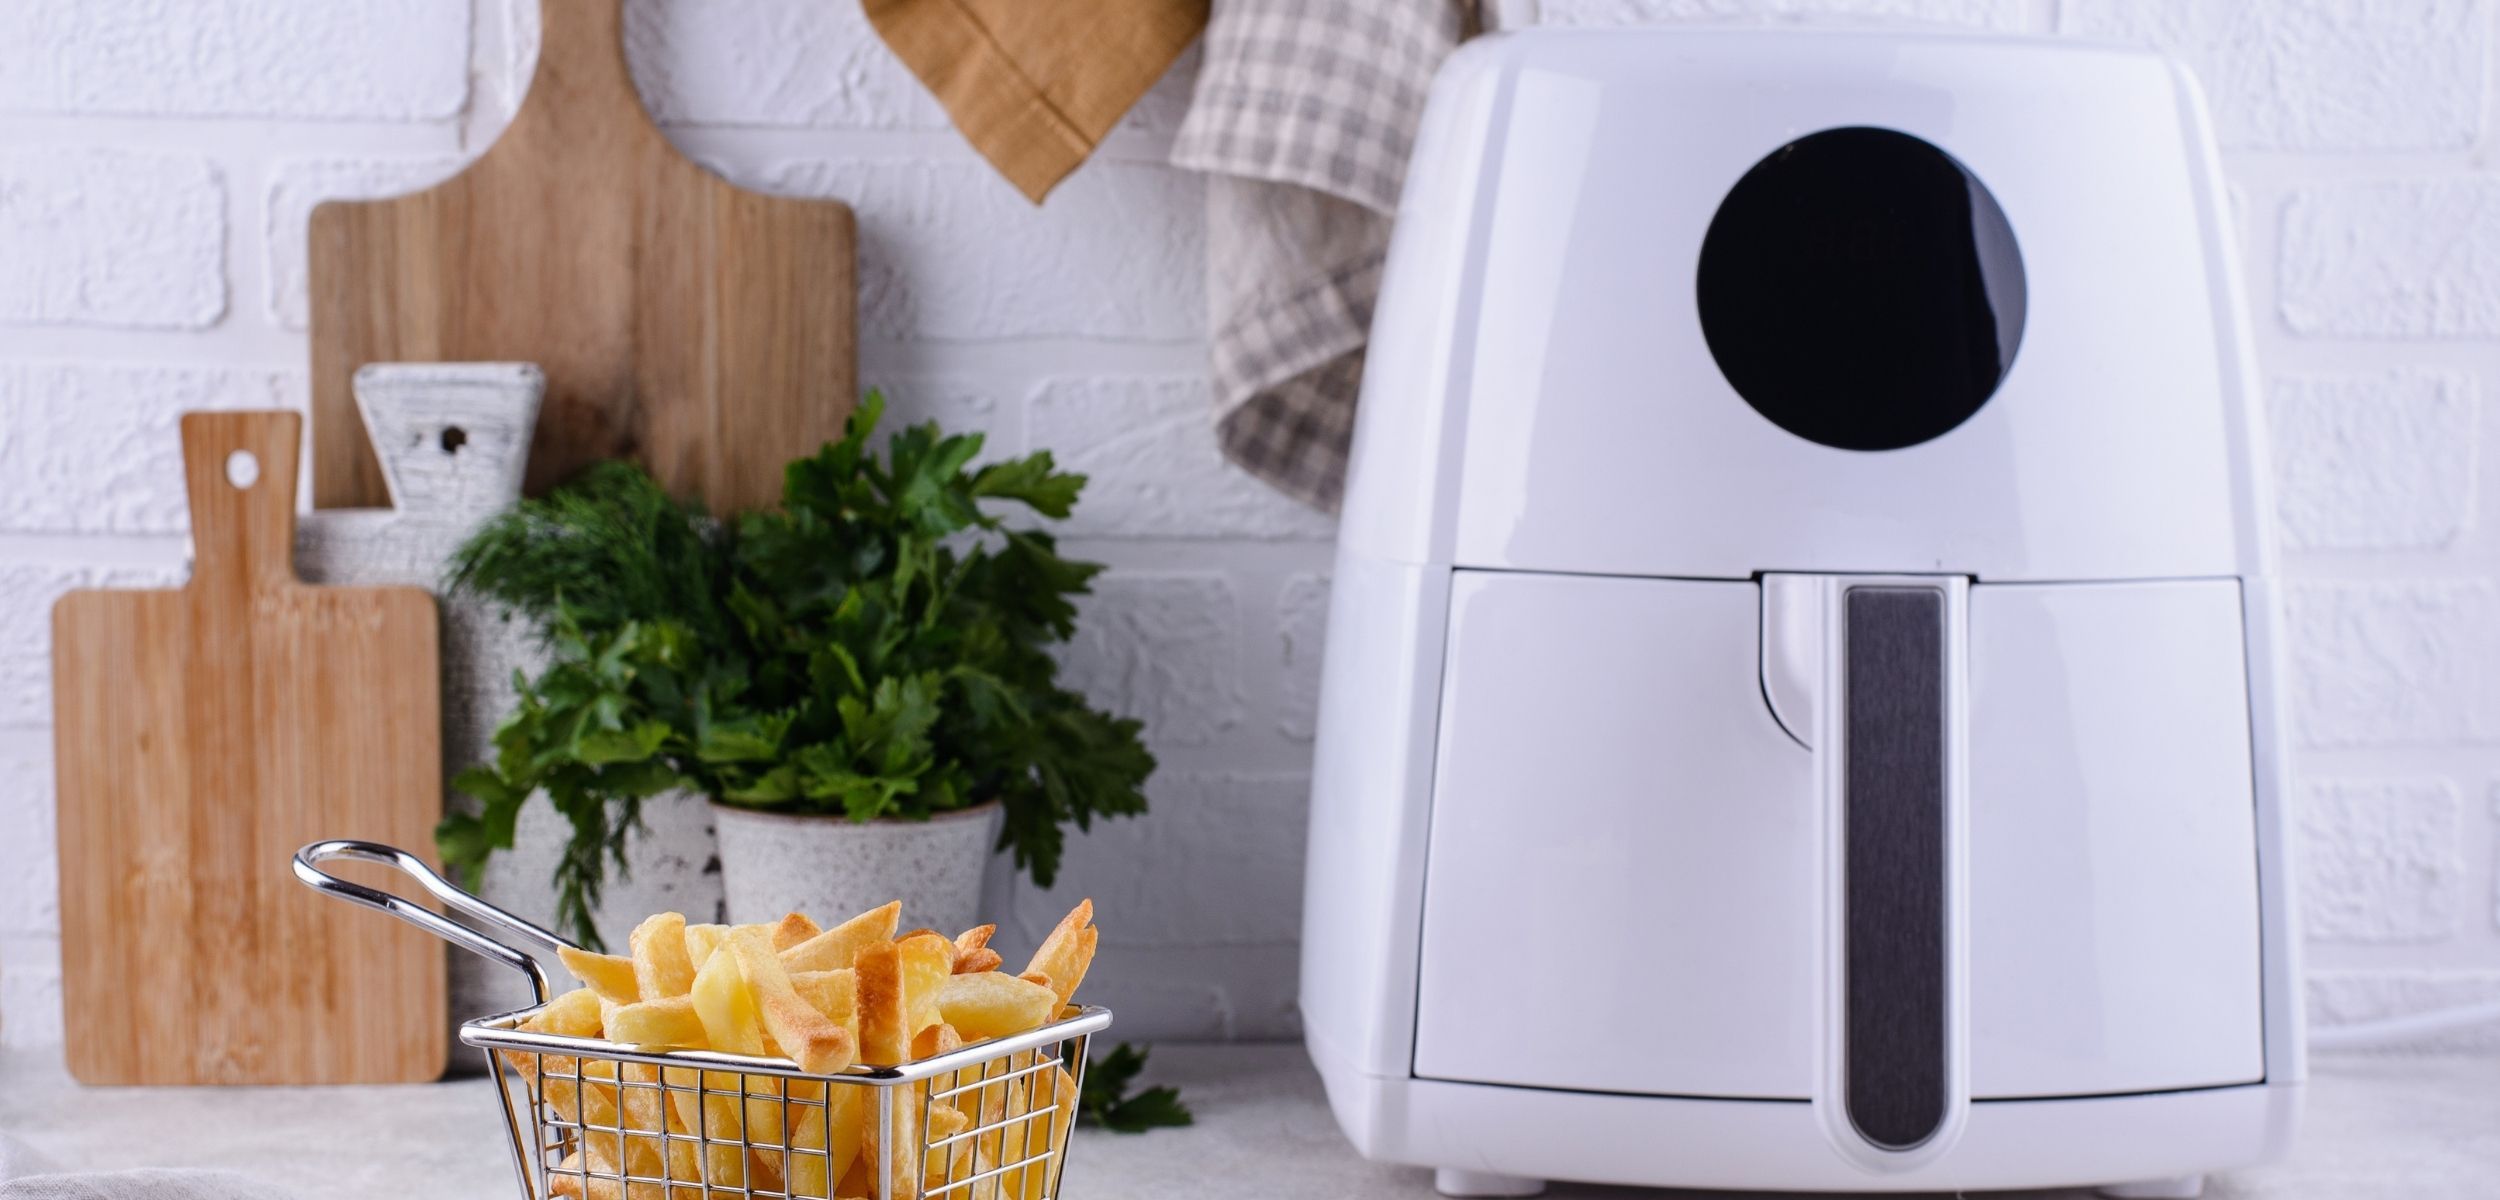 Qué es más saludable y económico: cocinar con freidora de aire o en el horno?  - BBC News Mundo